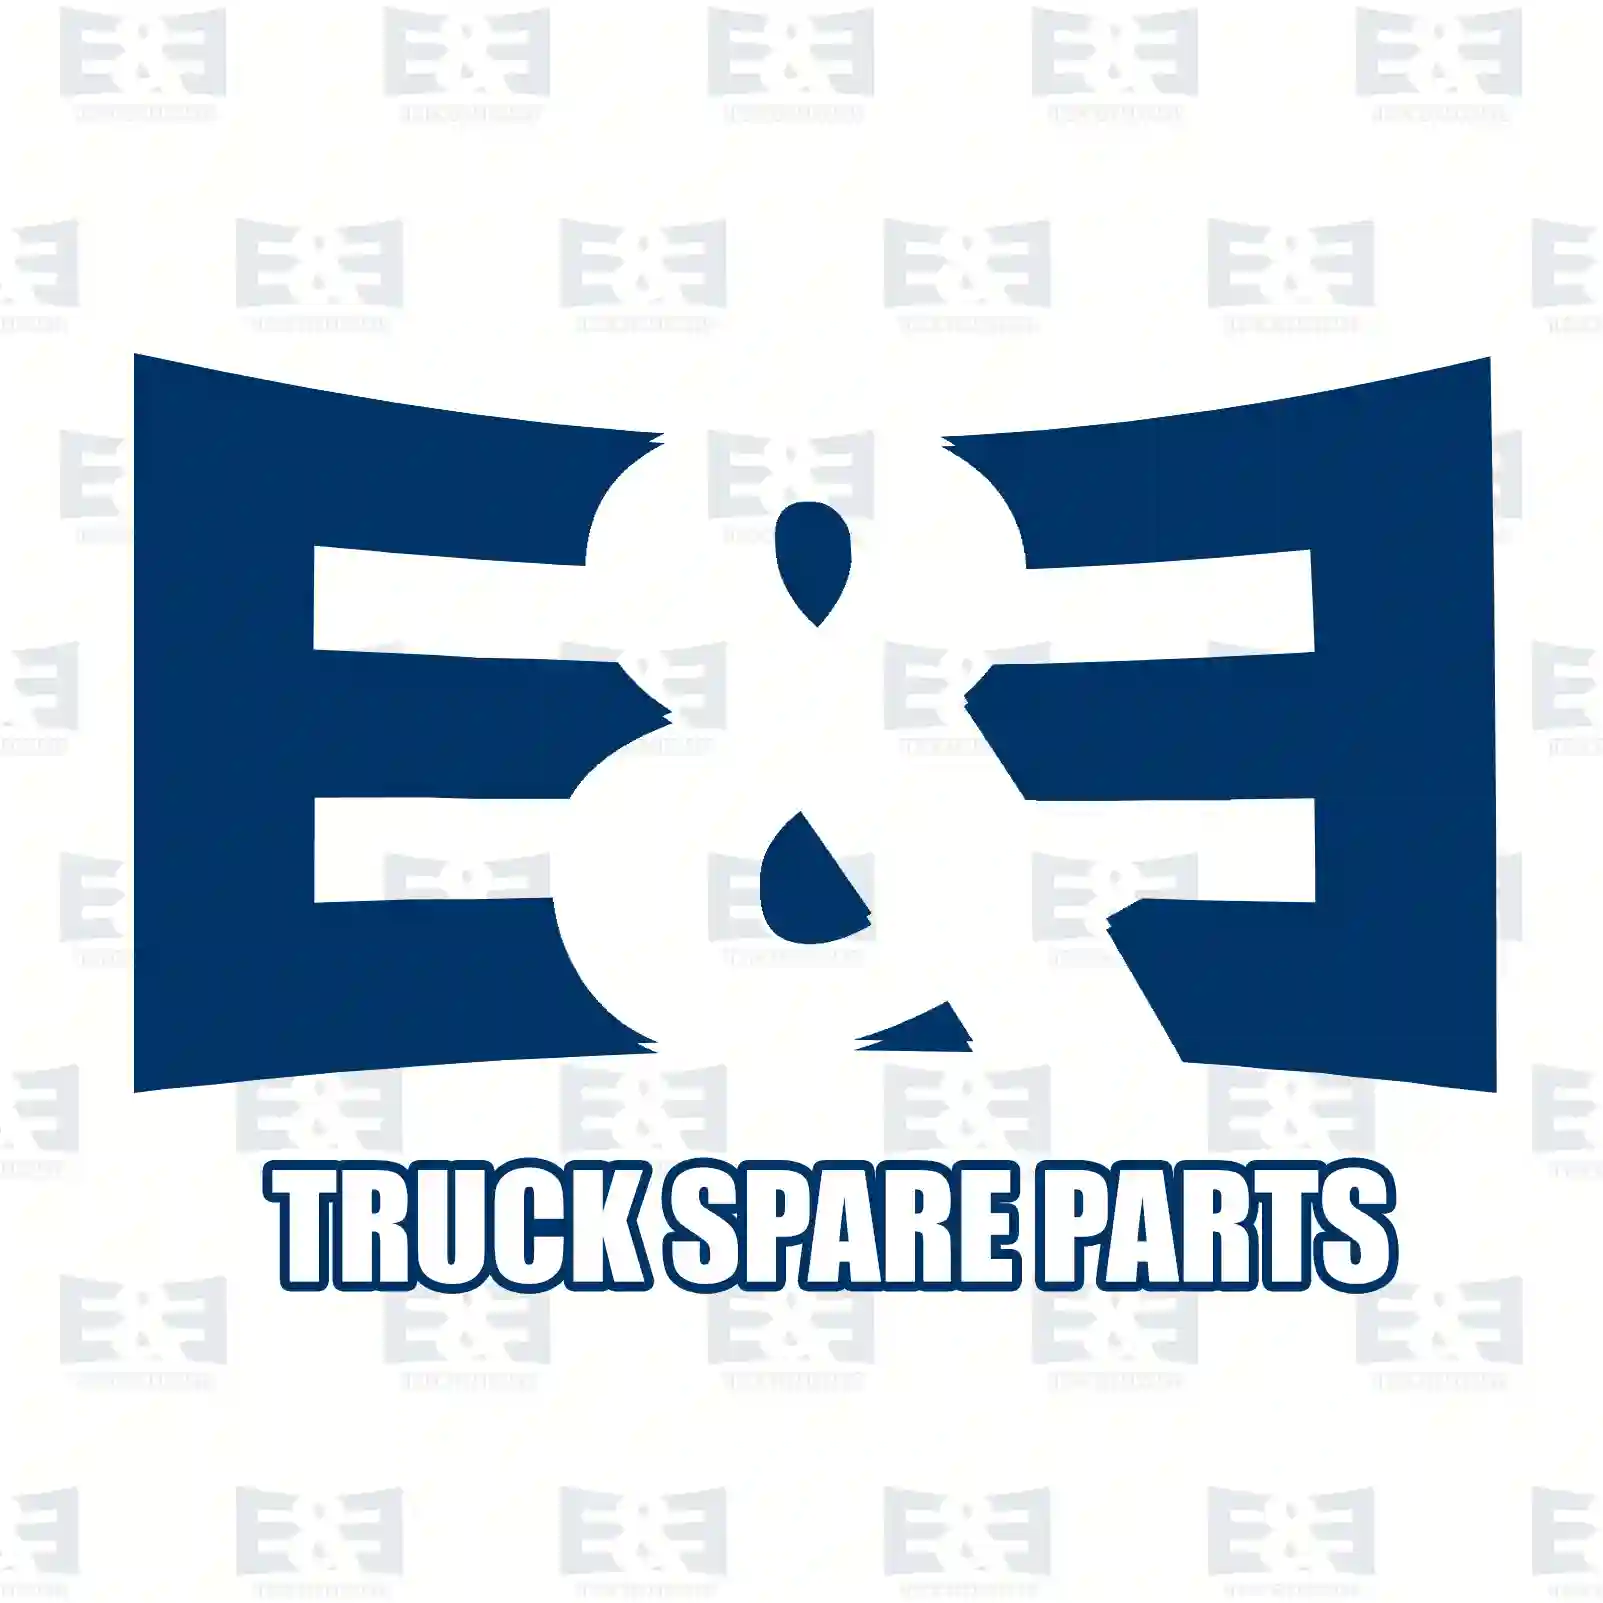 Gear shift knob, 2E2279324, 81970106007 ||  2E2279324 E&E Truck Spare Parts | Truck Spare Parts, Auotomotive Spare Parts Gear shift knob, 2E2279324, 81970106007 ||  2E2279324 E&E Truck Spare Parts | Truck Spare Parts, Auotomotive Spare Parts